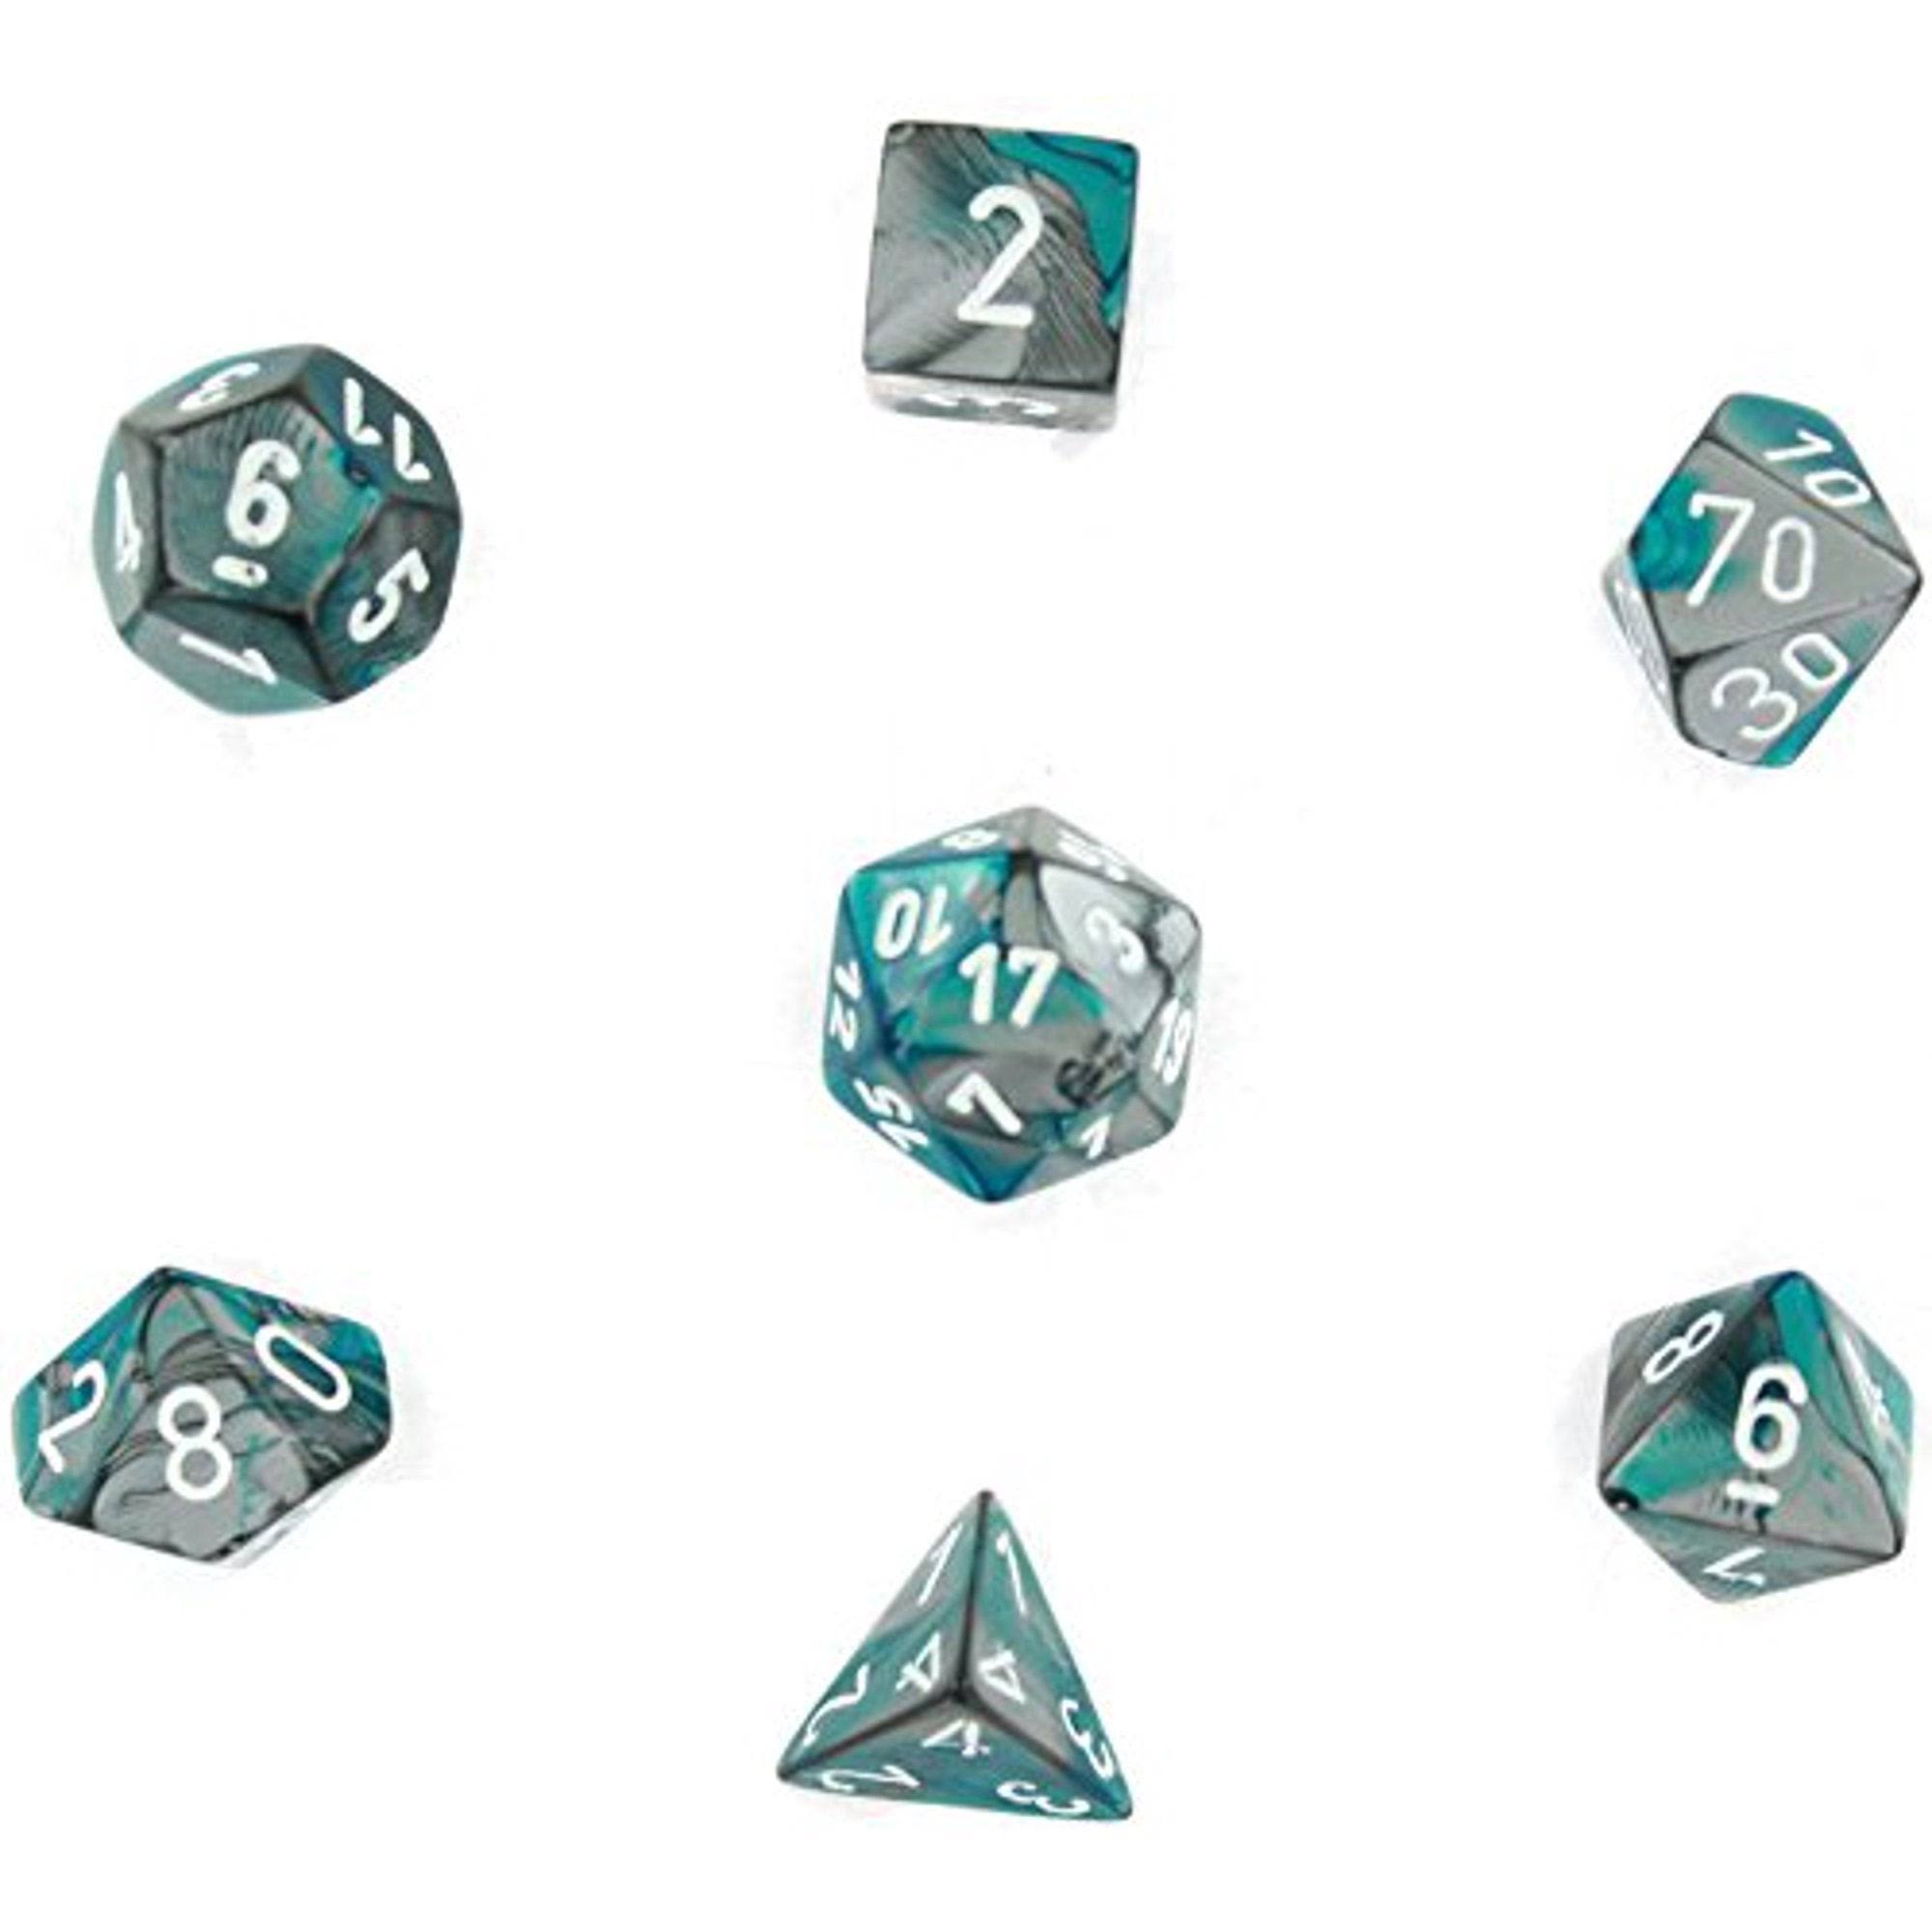 Chessex Gemini Polyhedral 7-Die Dice Set (Steel/Teal & White)